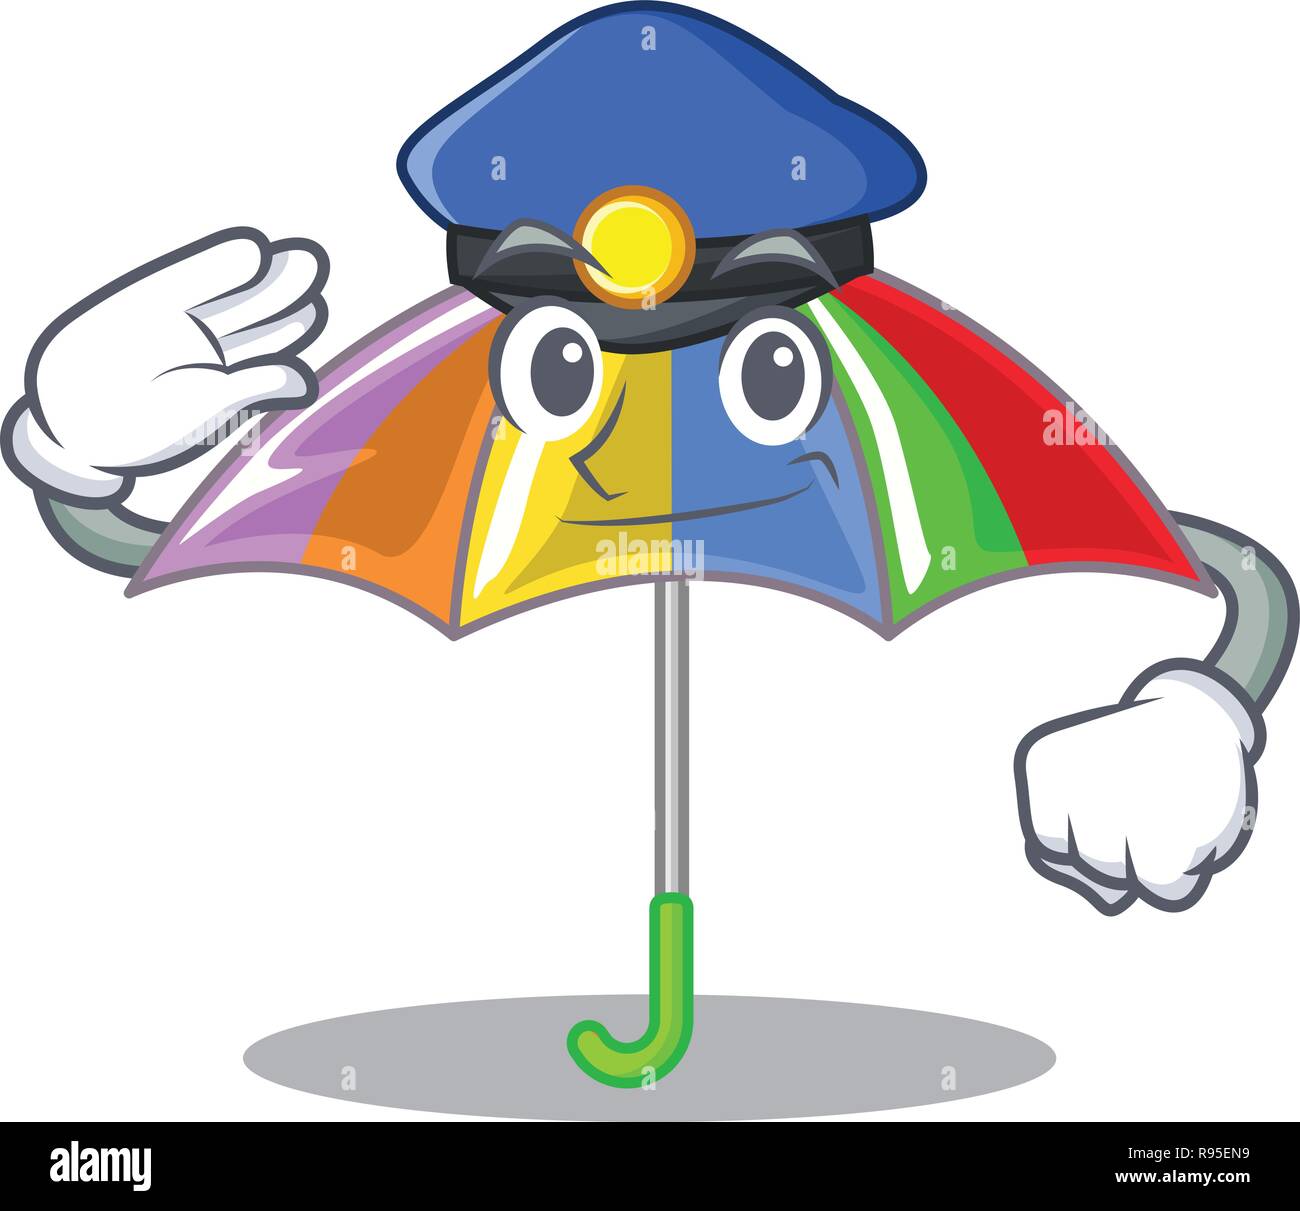 Polizei Regenbogen Regenschirm in Form einer Karikatur Stock-Vektorgrafik -  Alamy